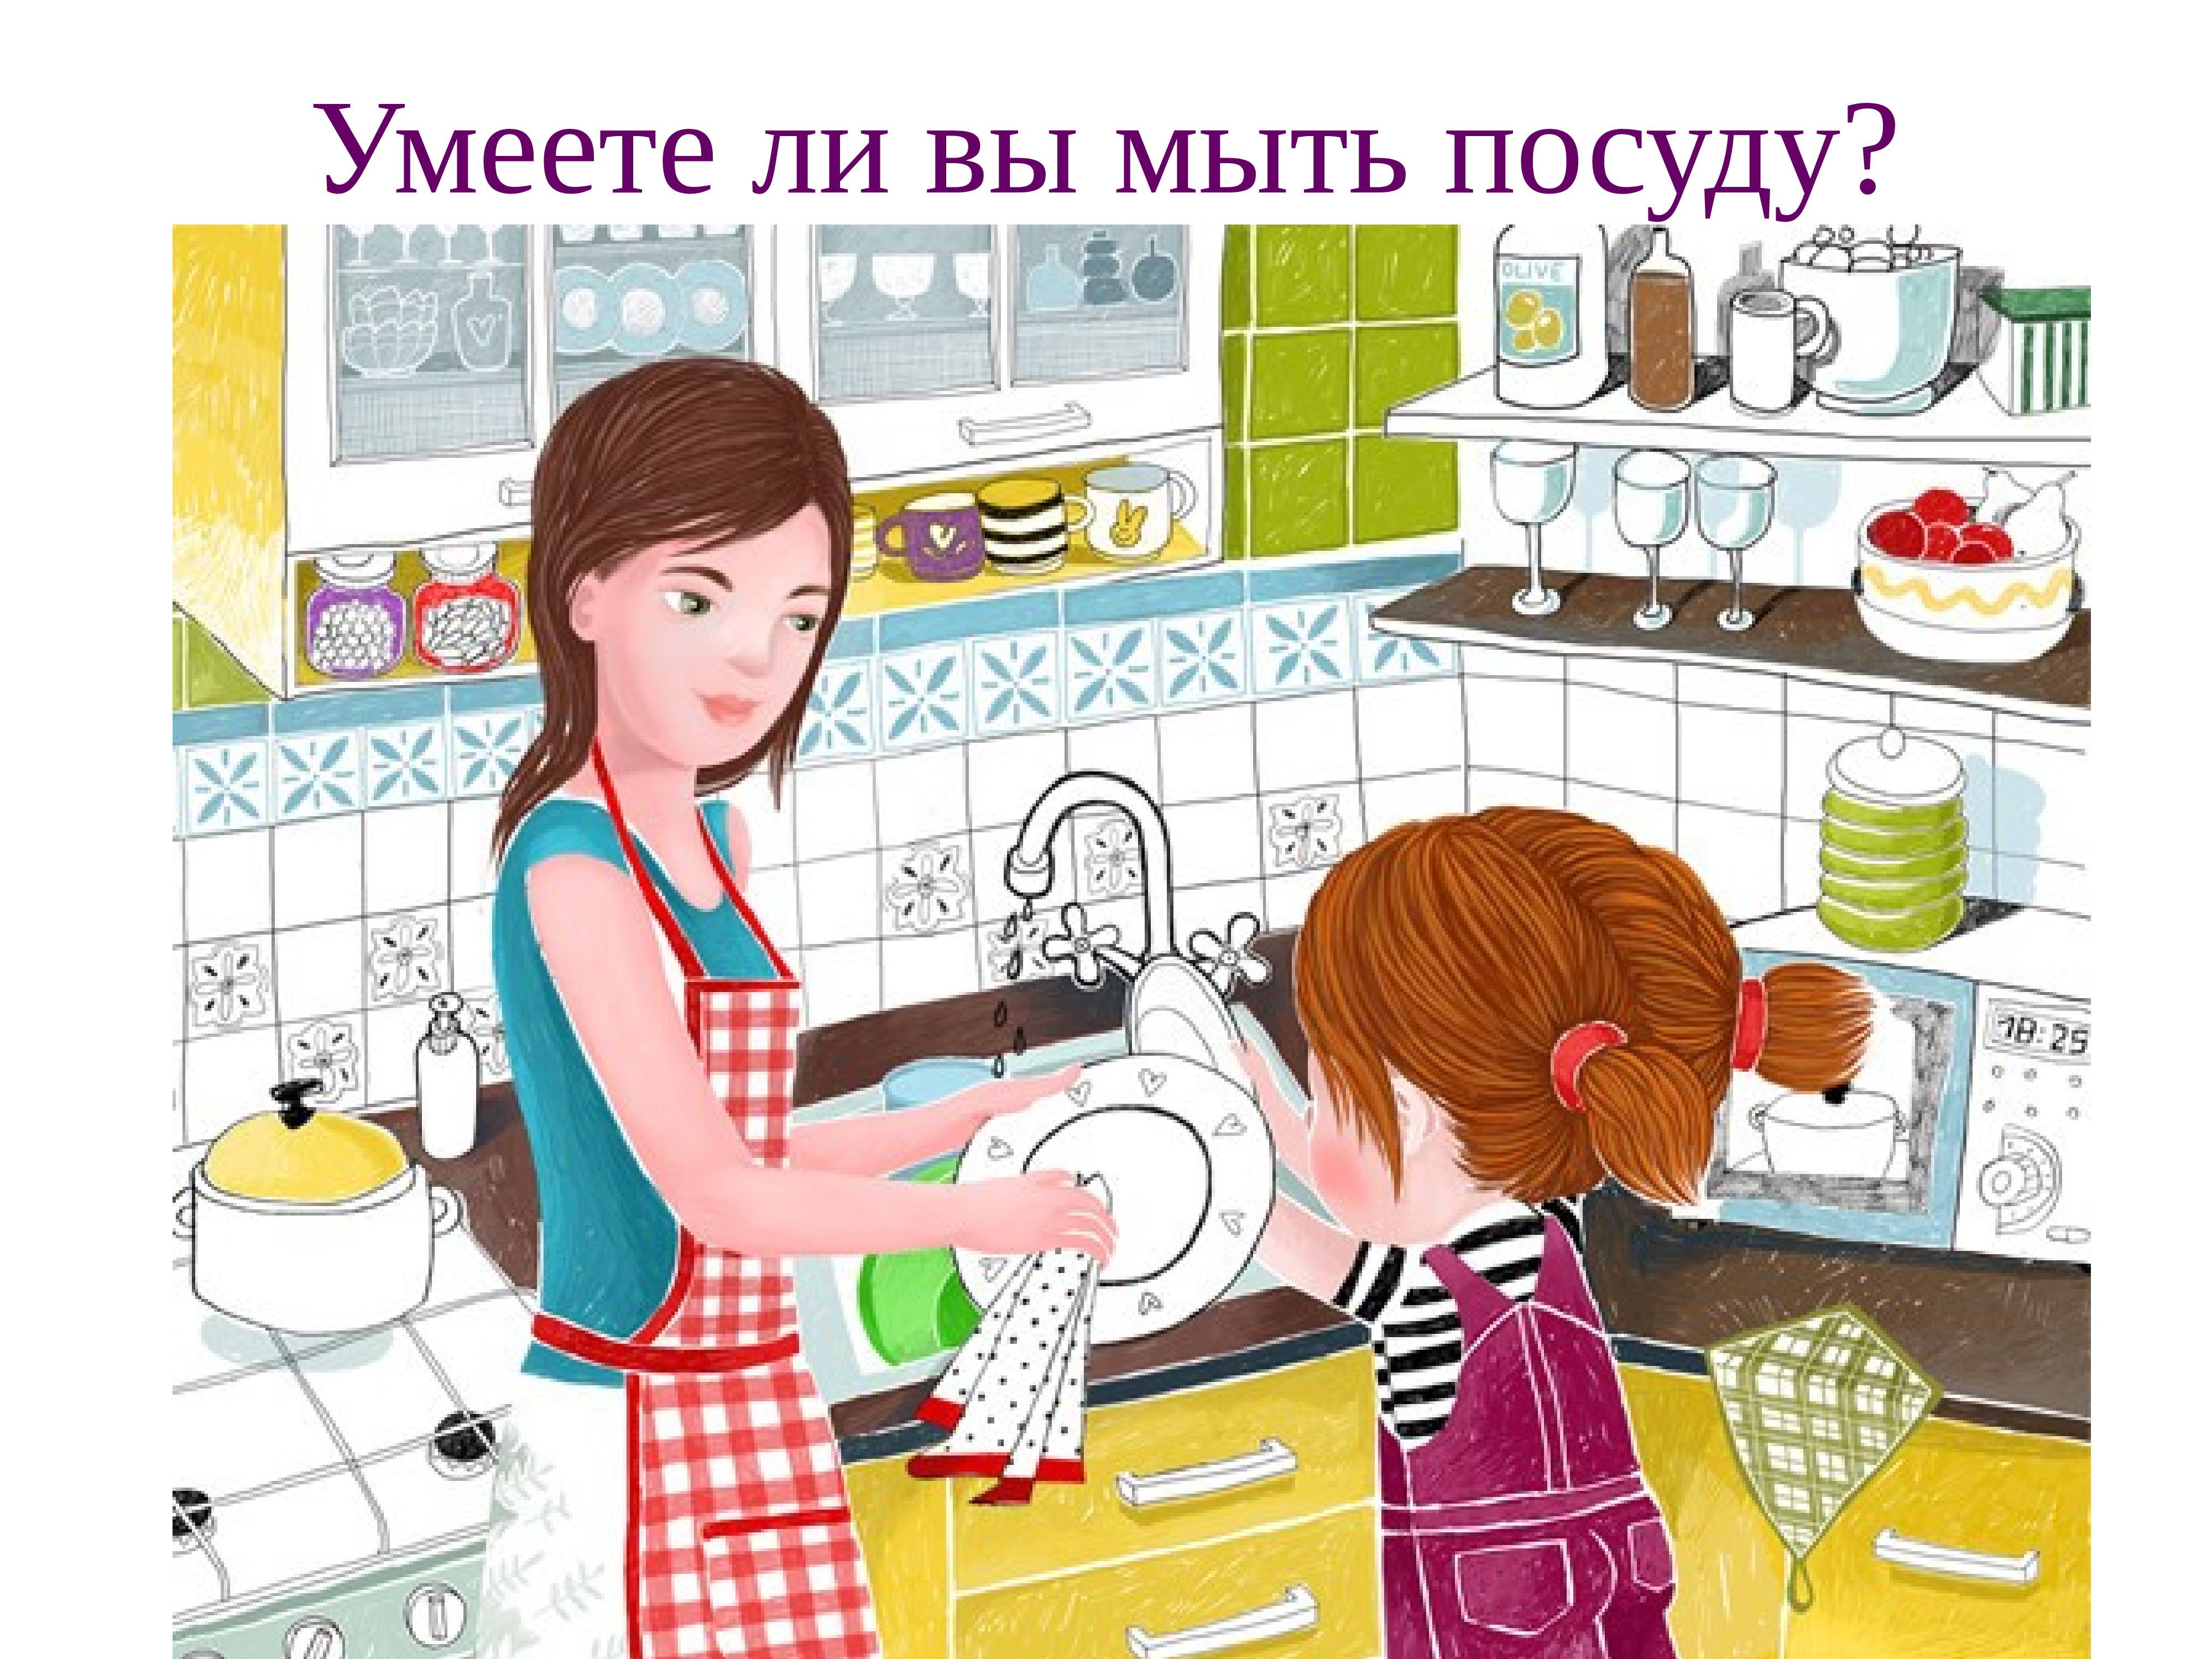 Семья моет посуду. Мама моет посуду. Помогает маме картина. Мамин помощник рисунок. Картинки помогаю маме.